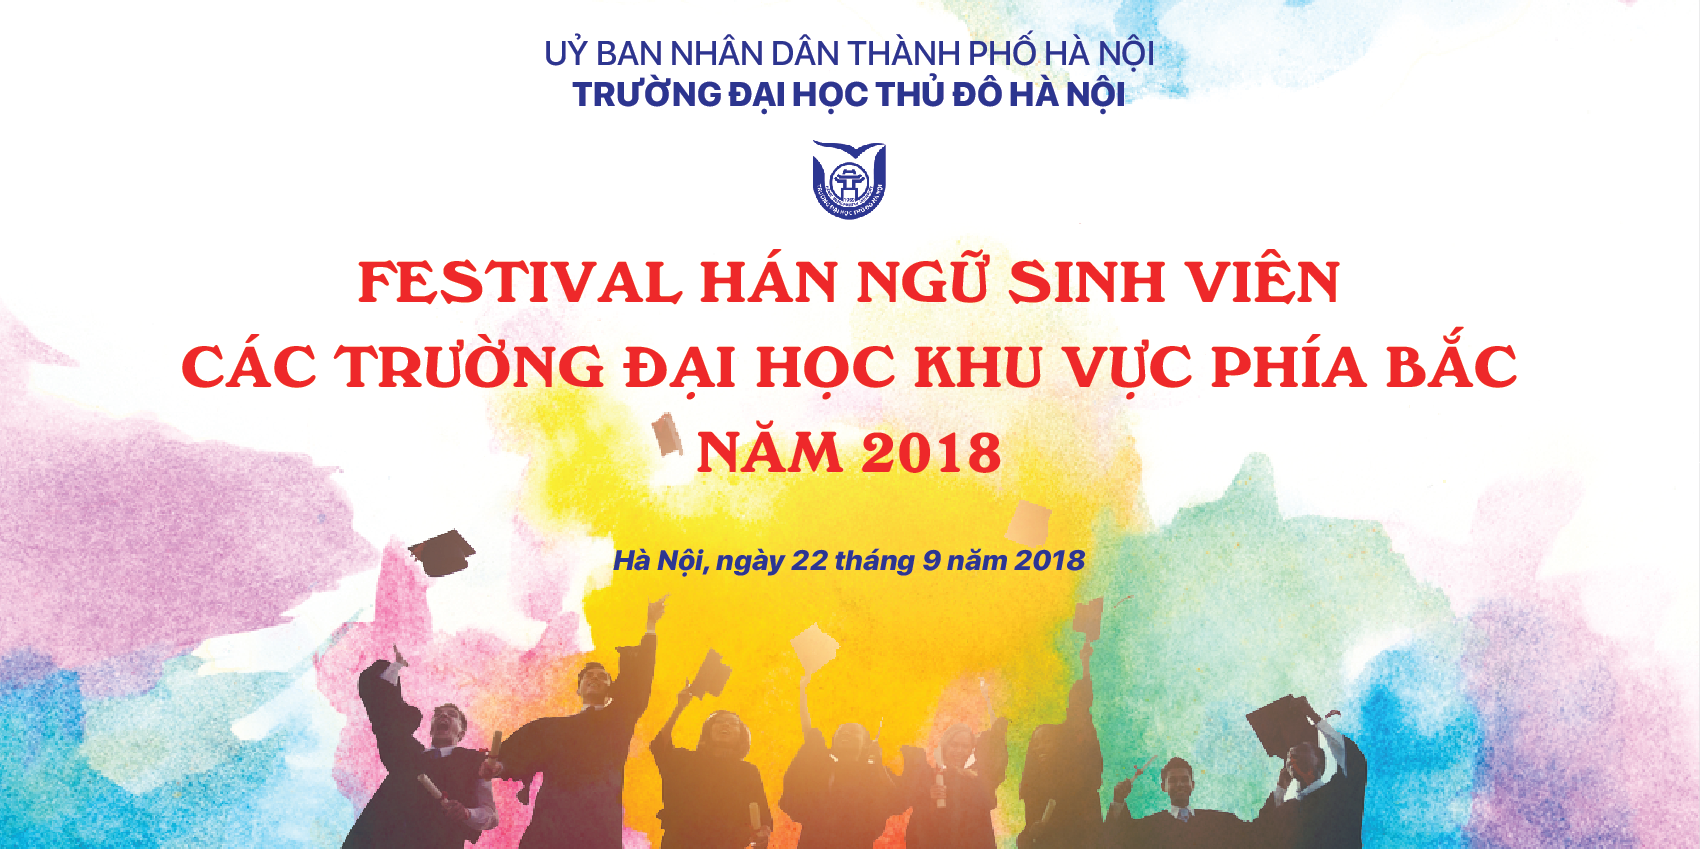 Festival Hán ngữ sinh viên các trường Đại học khu vực phía Bắc – 2018